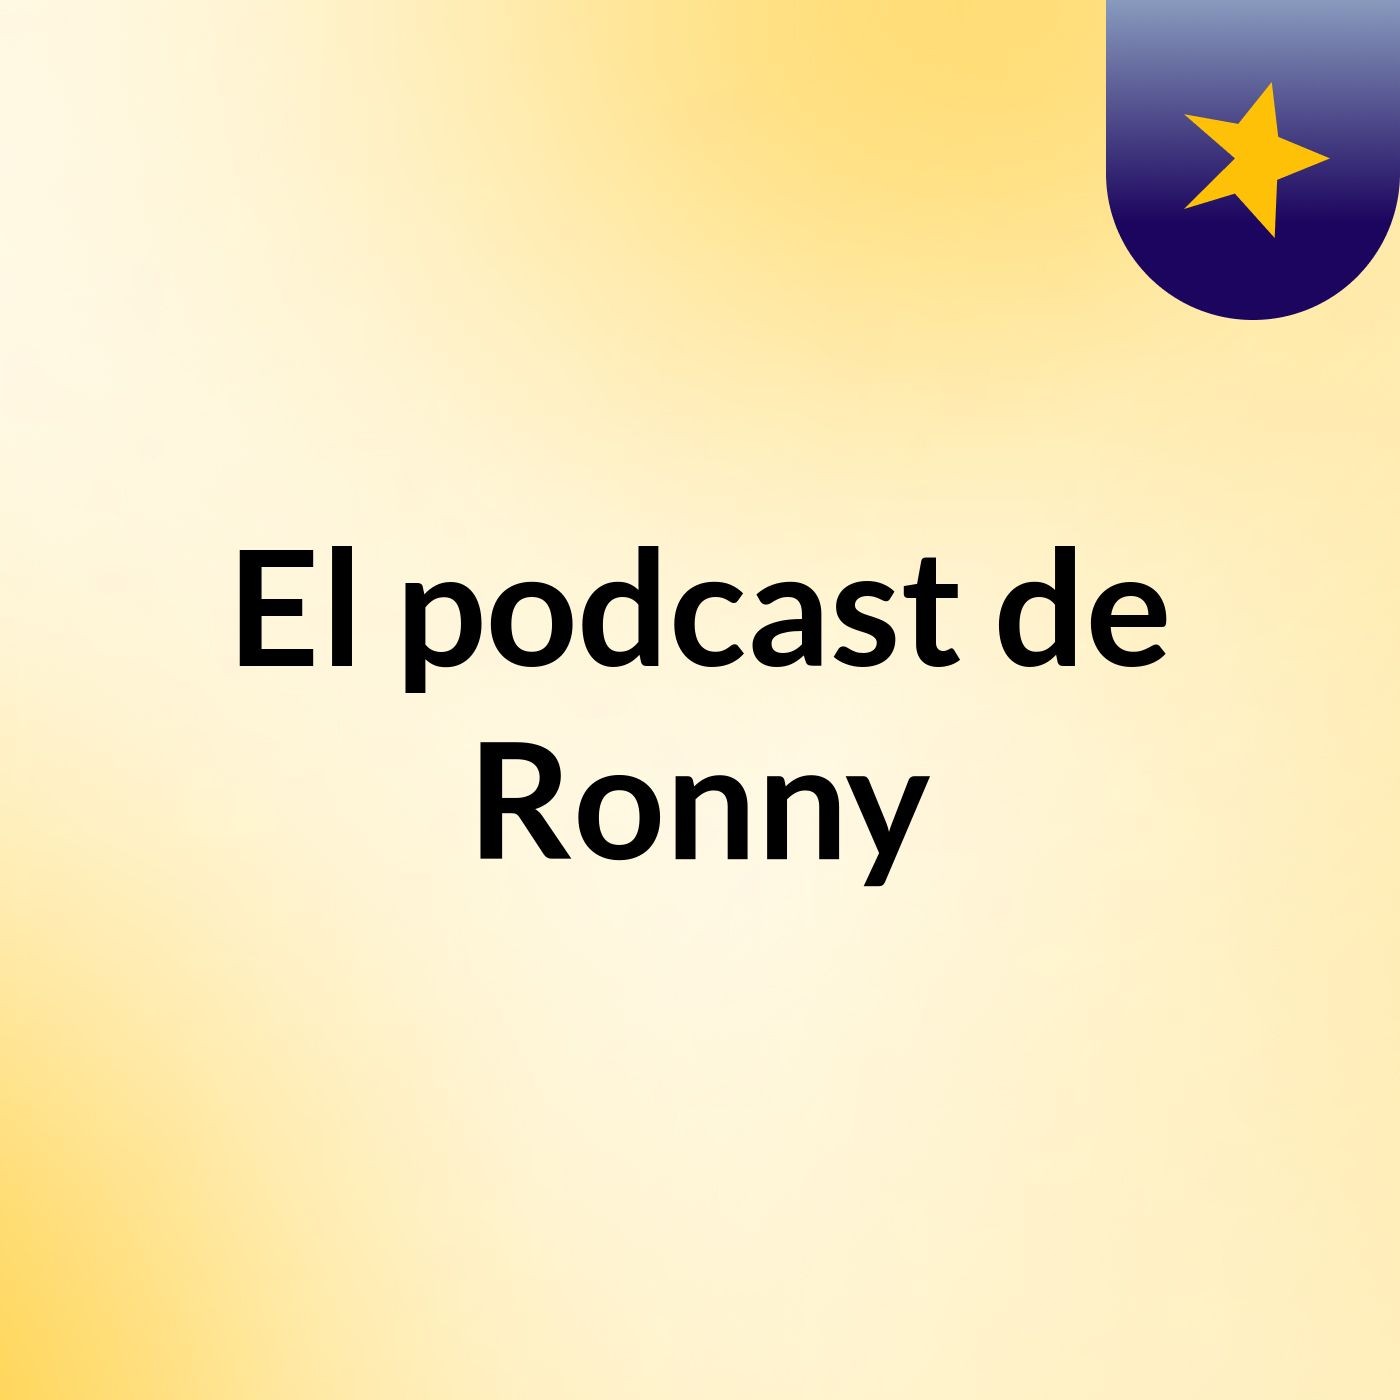 El podcast de Ronny